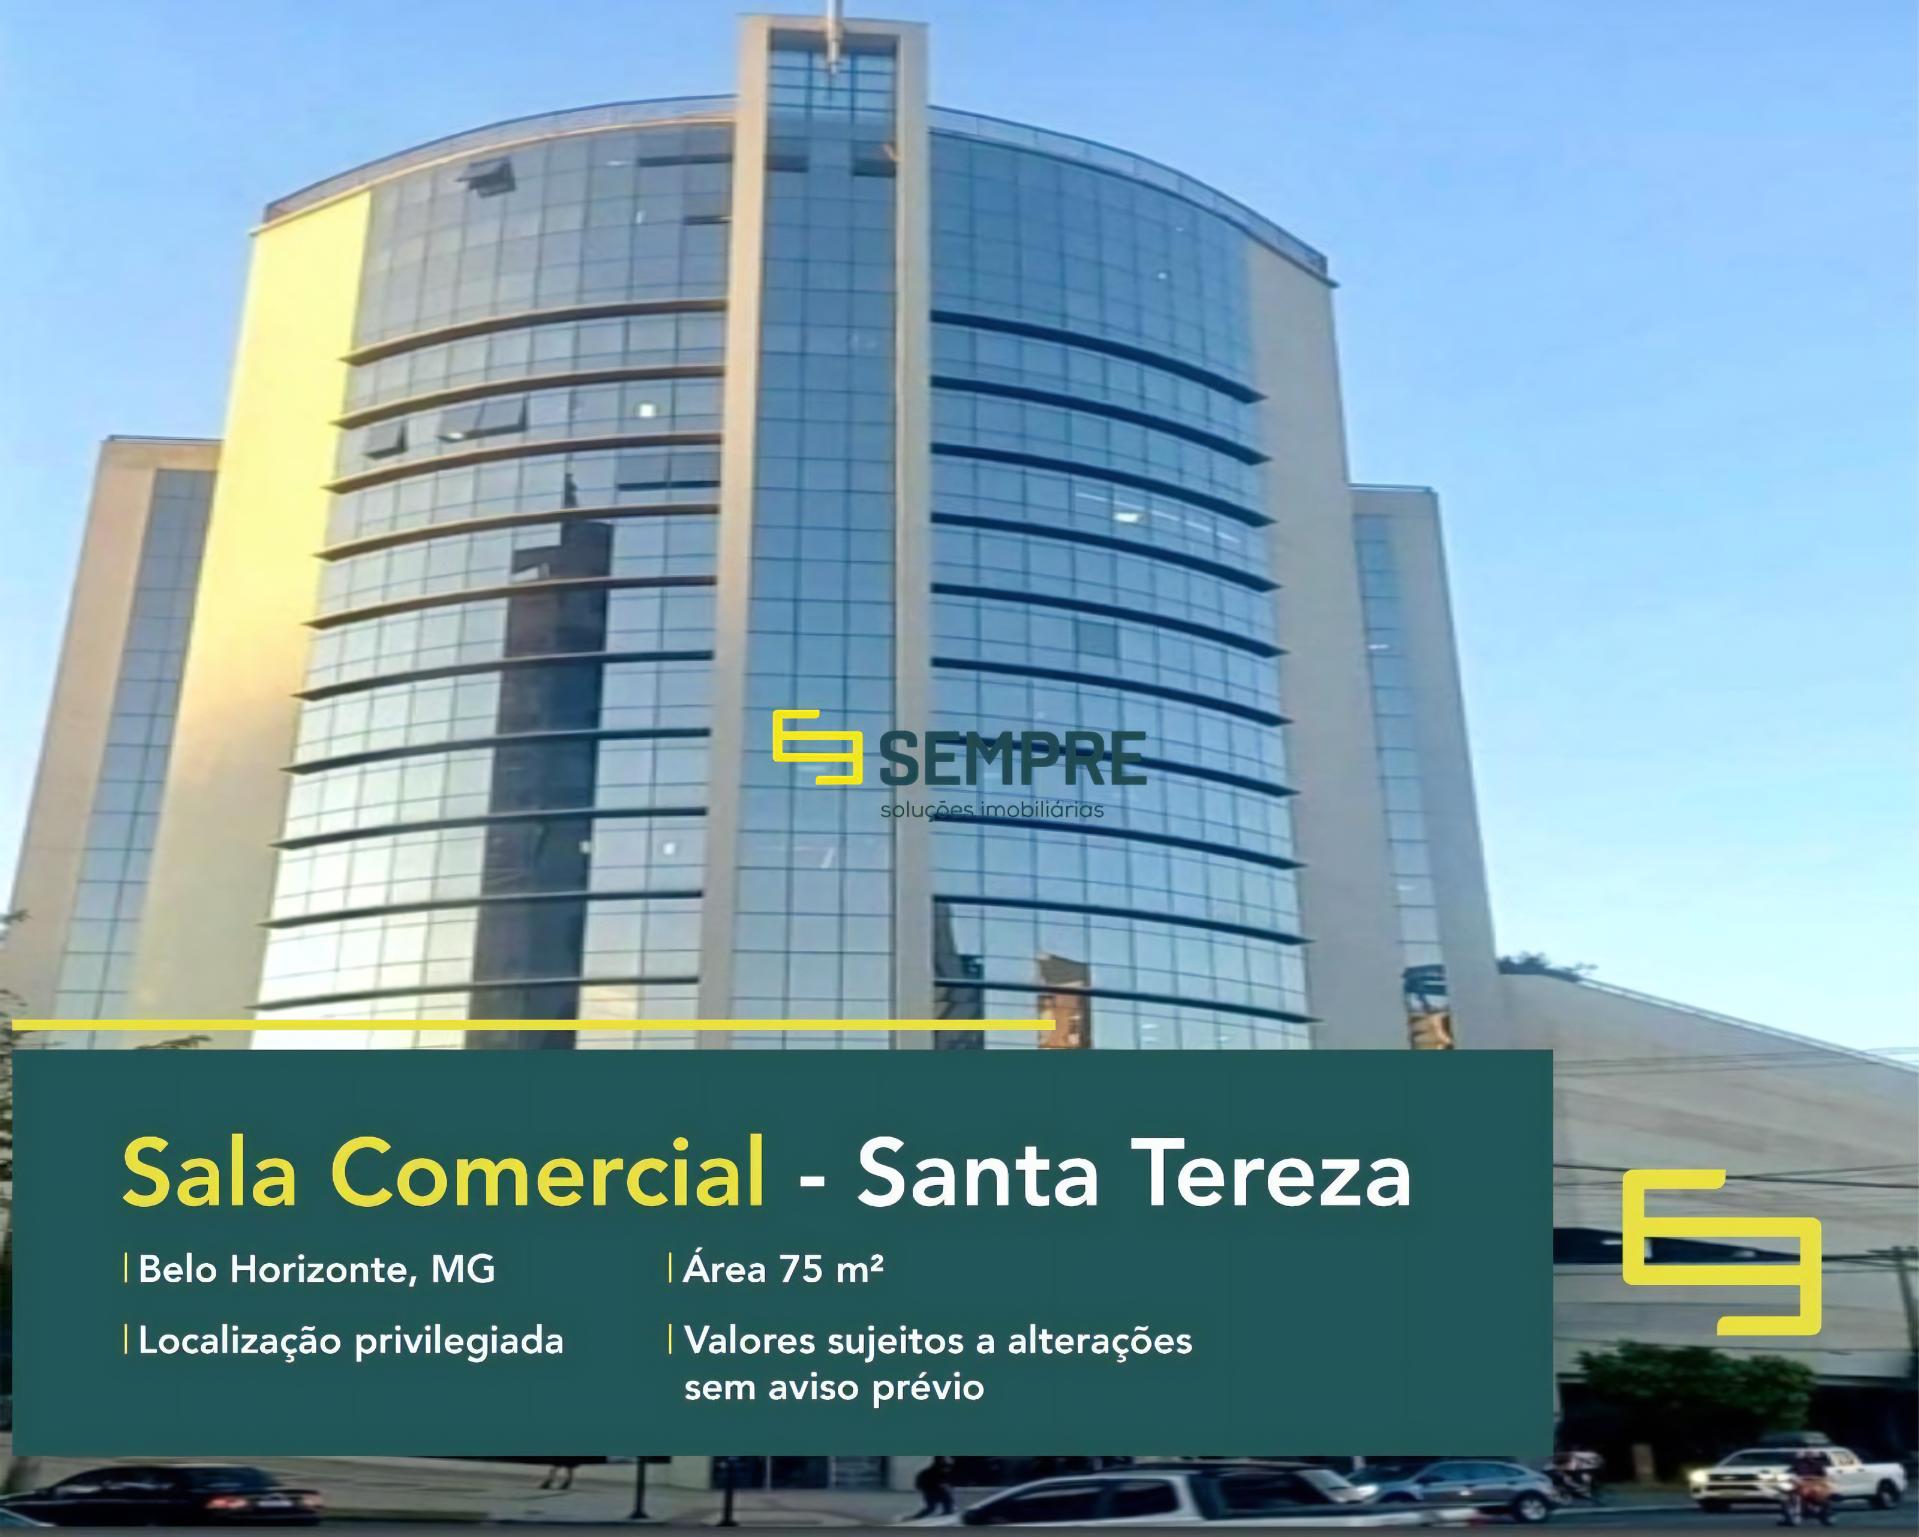 Conjunto de salas comerciais à venda em Belo Horizonte, em excelente localização. O estabelecimento comercial conta com área de 75 m².